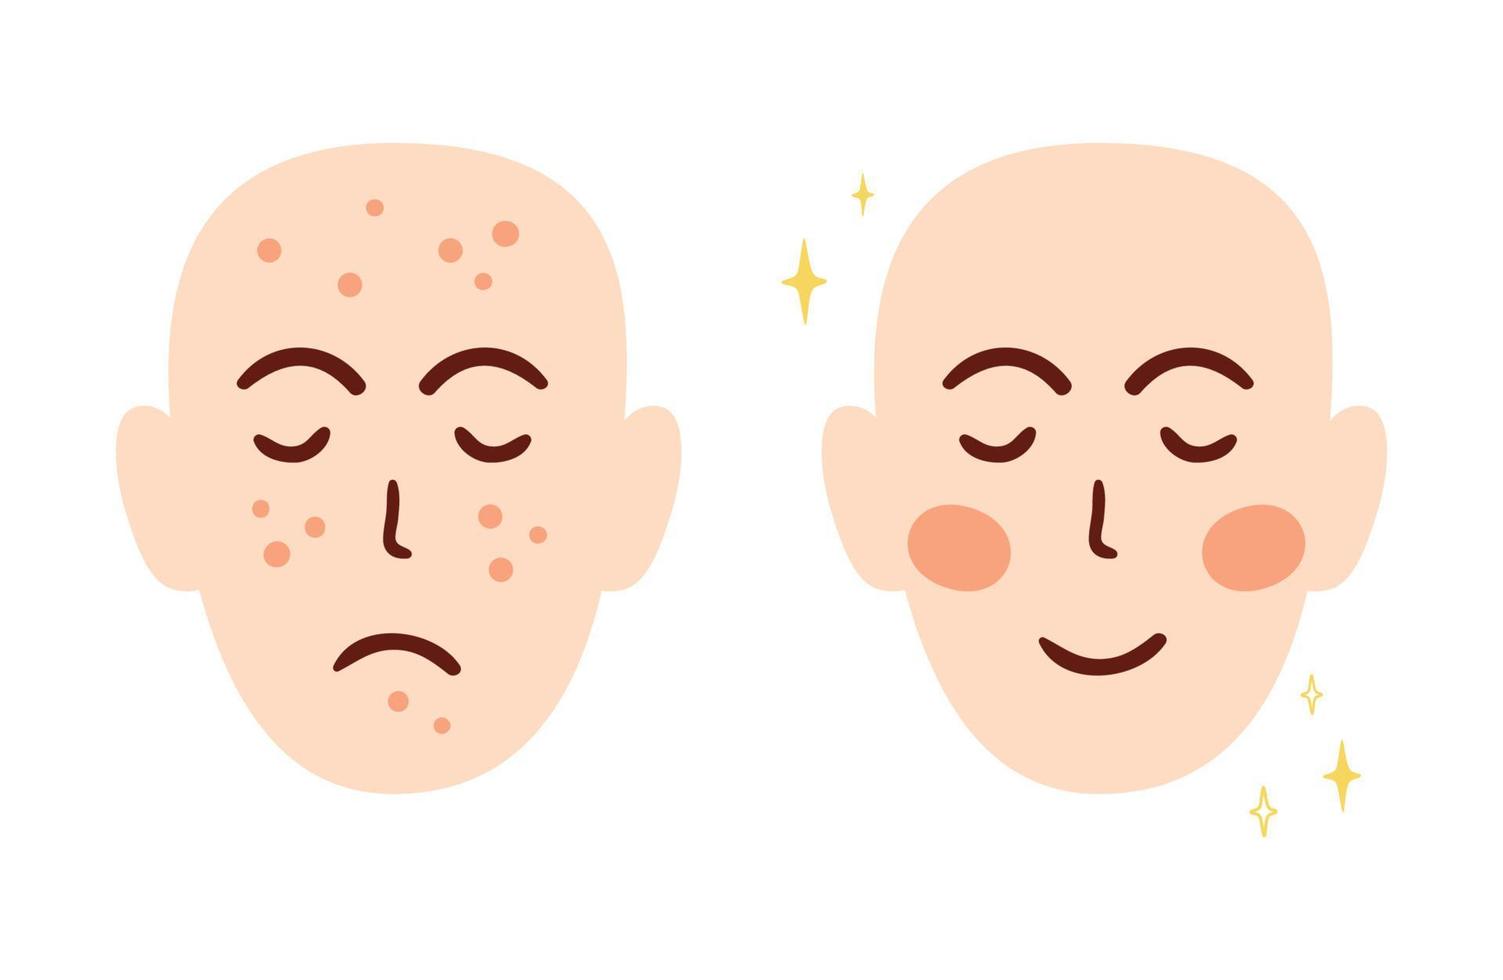 concept de traitement du visage contre l'acné avec deux visages différents avant et après. problème de peau acnéique. cicatrices d'acné. éléments de caractère de marque cosmétique anti-acné isolés sur blanc. illustration de vecteur de dessin animé.